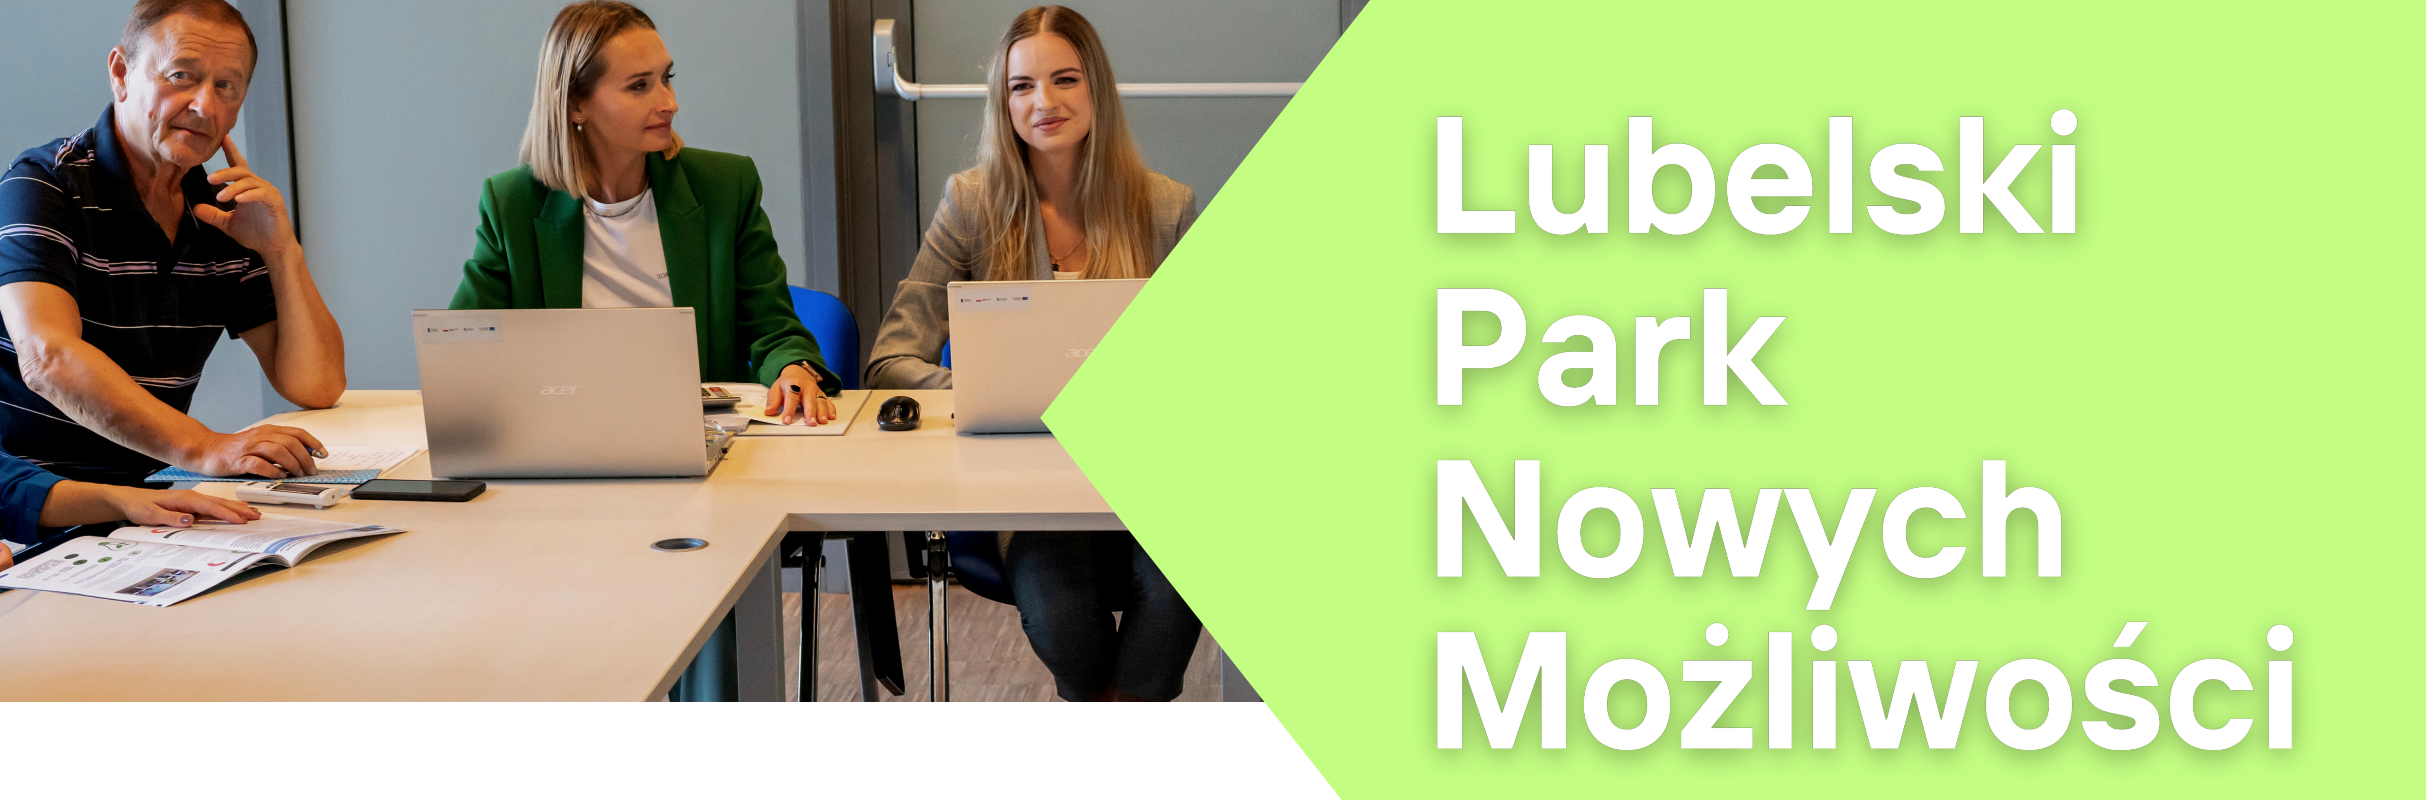 Trzy osoby, dwie kobiety i mężczyzna, siedzą przy stole z laptopami w biurowym otoczeniu, z napisem "Lubelski Park Nowych Możliwości".